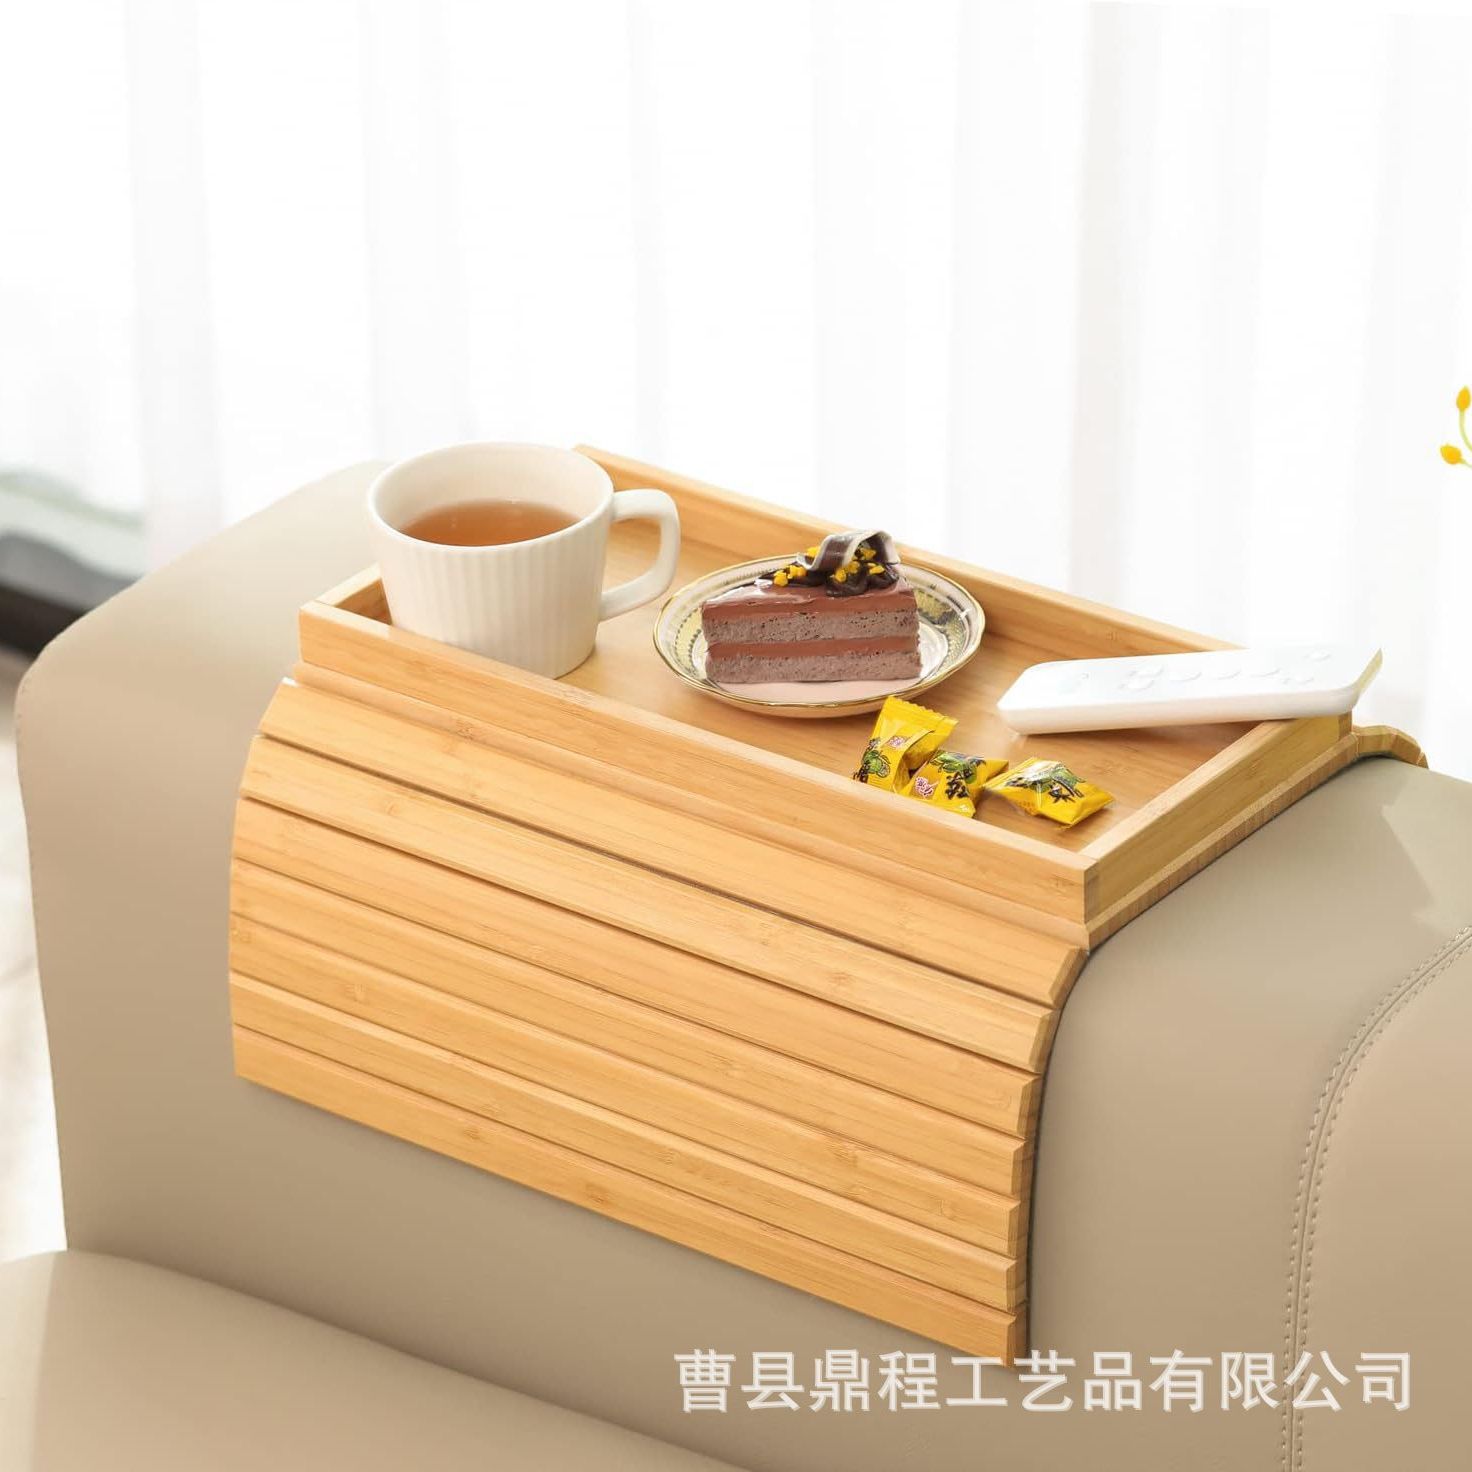 竹制可折叠沙发扶手盘家用沙发夹早餐茶杯盘可移动木质零食点心盘